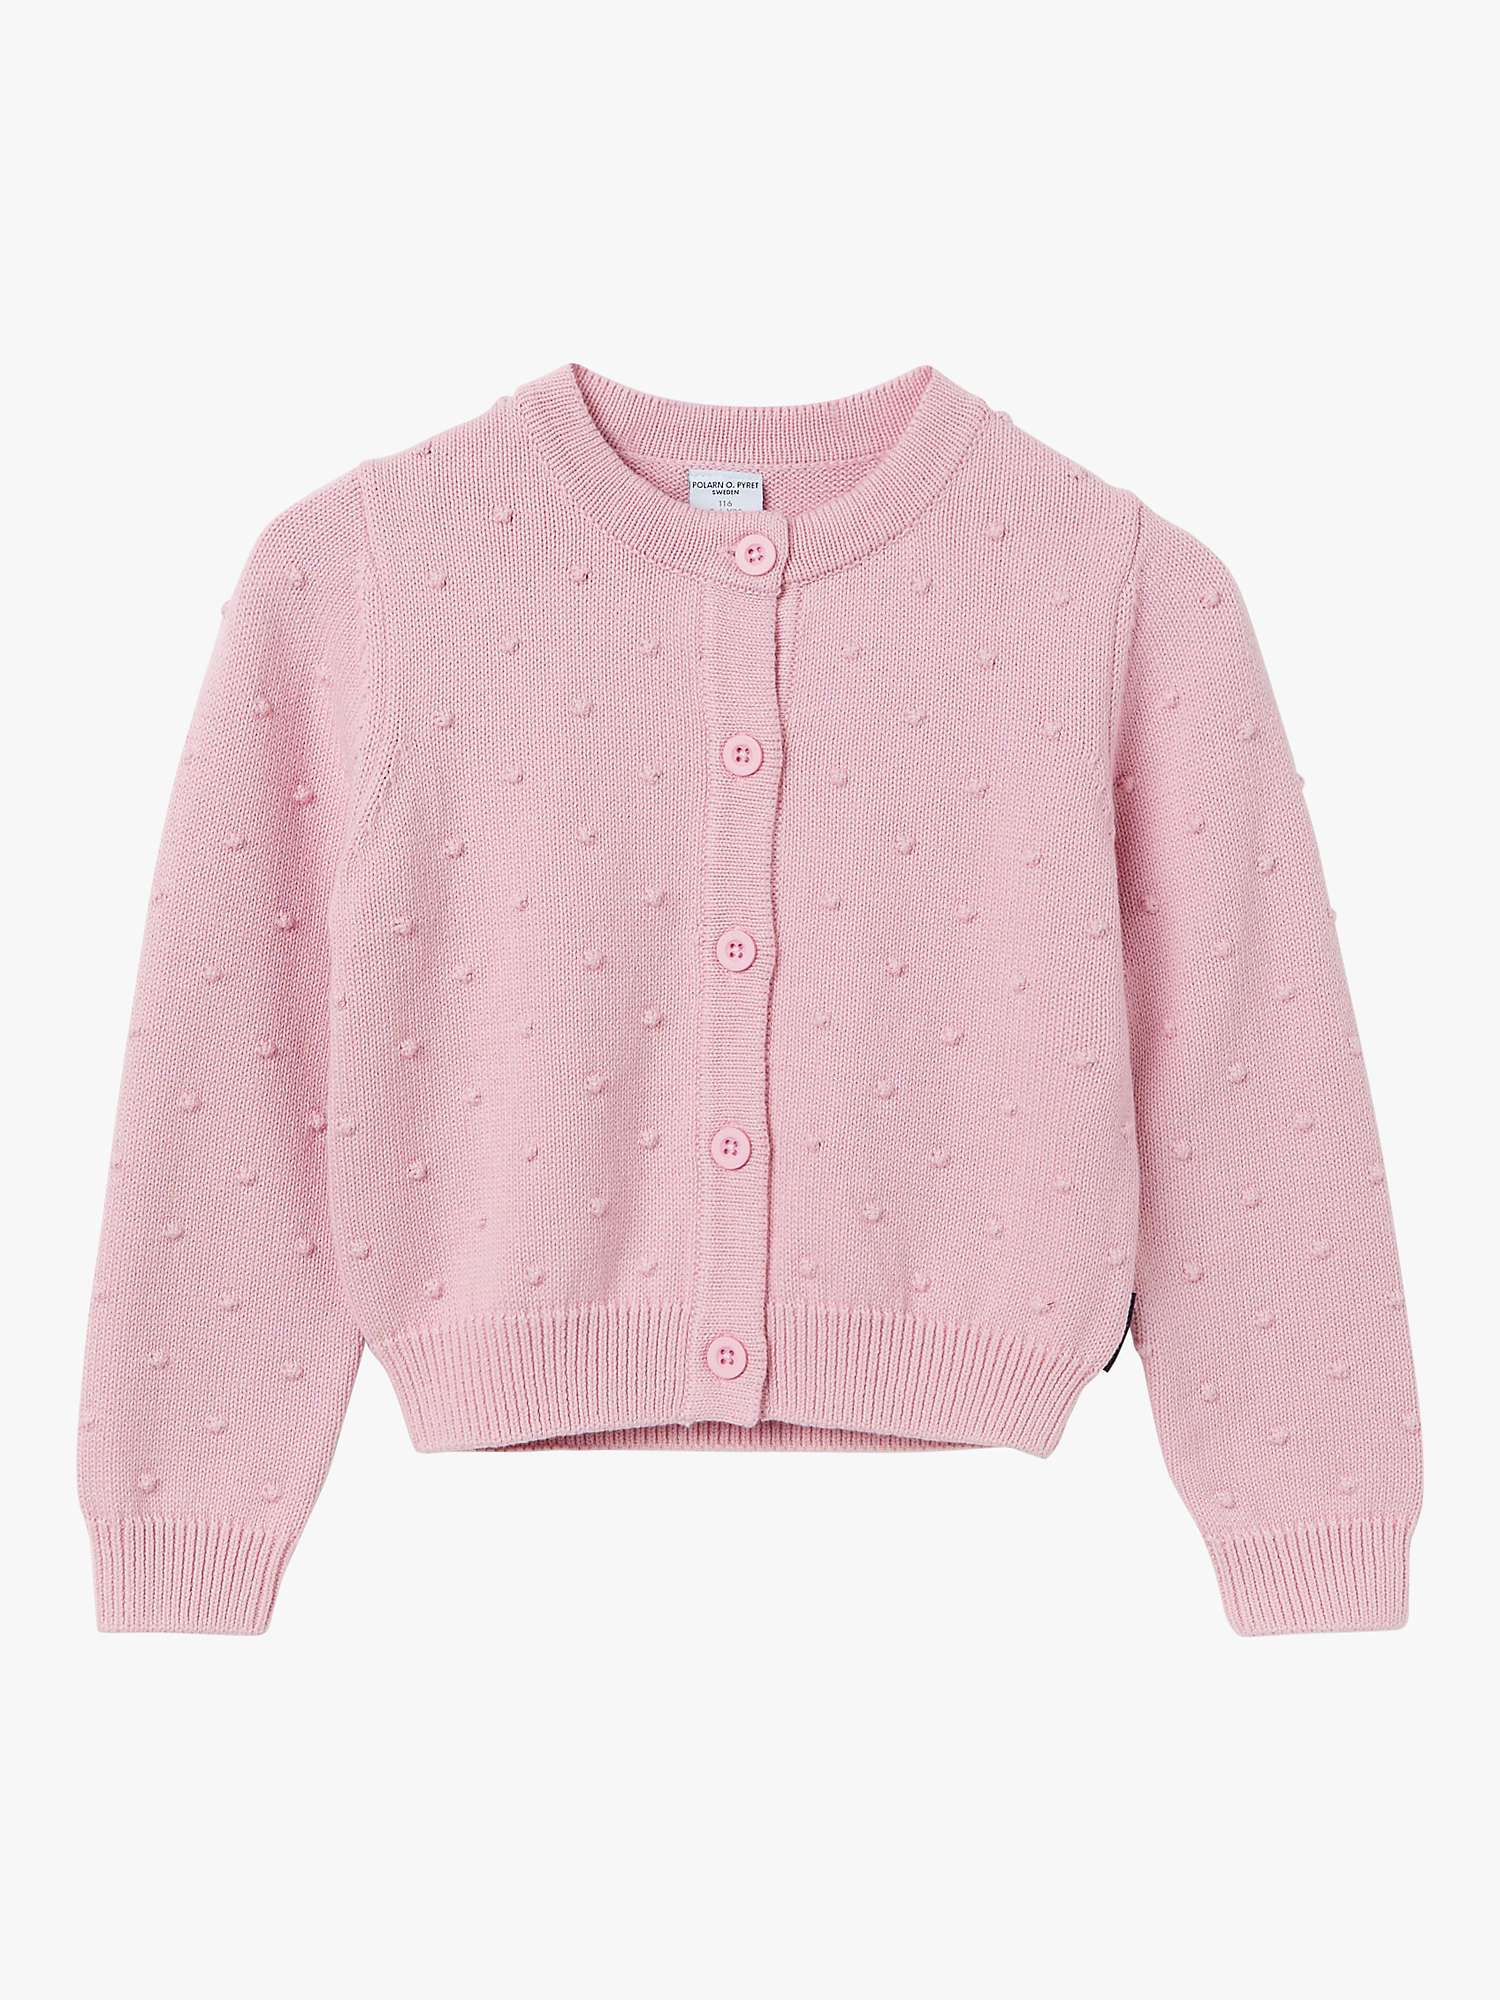 Buy Polarn O. Pyret Kids' Organic Cotton Knit Bobble Detail Cardigan, Pink Online at johnlewis.com